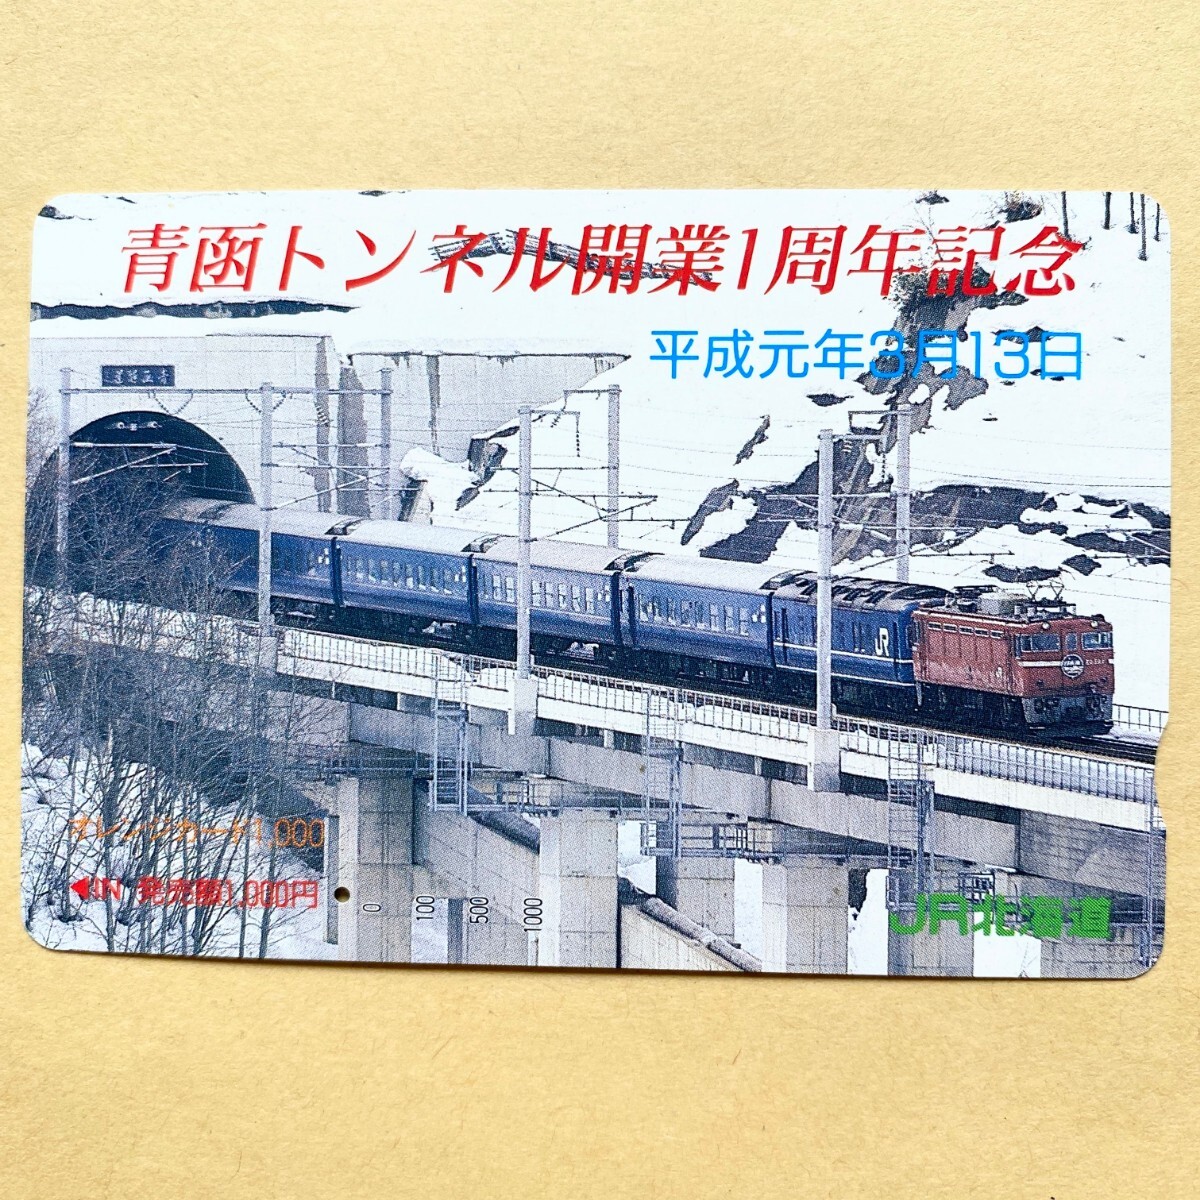 【使用済】 オレンジカード JR北海道 青函トンネル開業1周年記念 平成元年3月13日_画像1